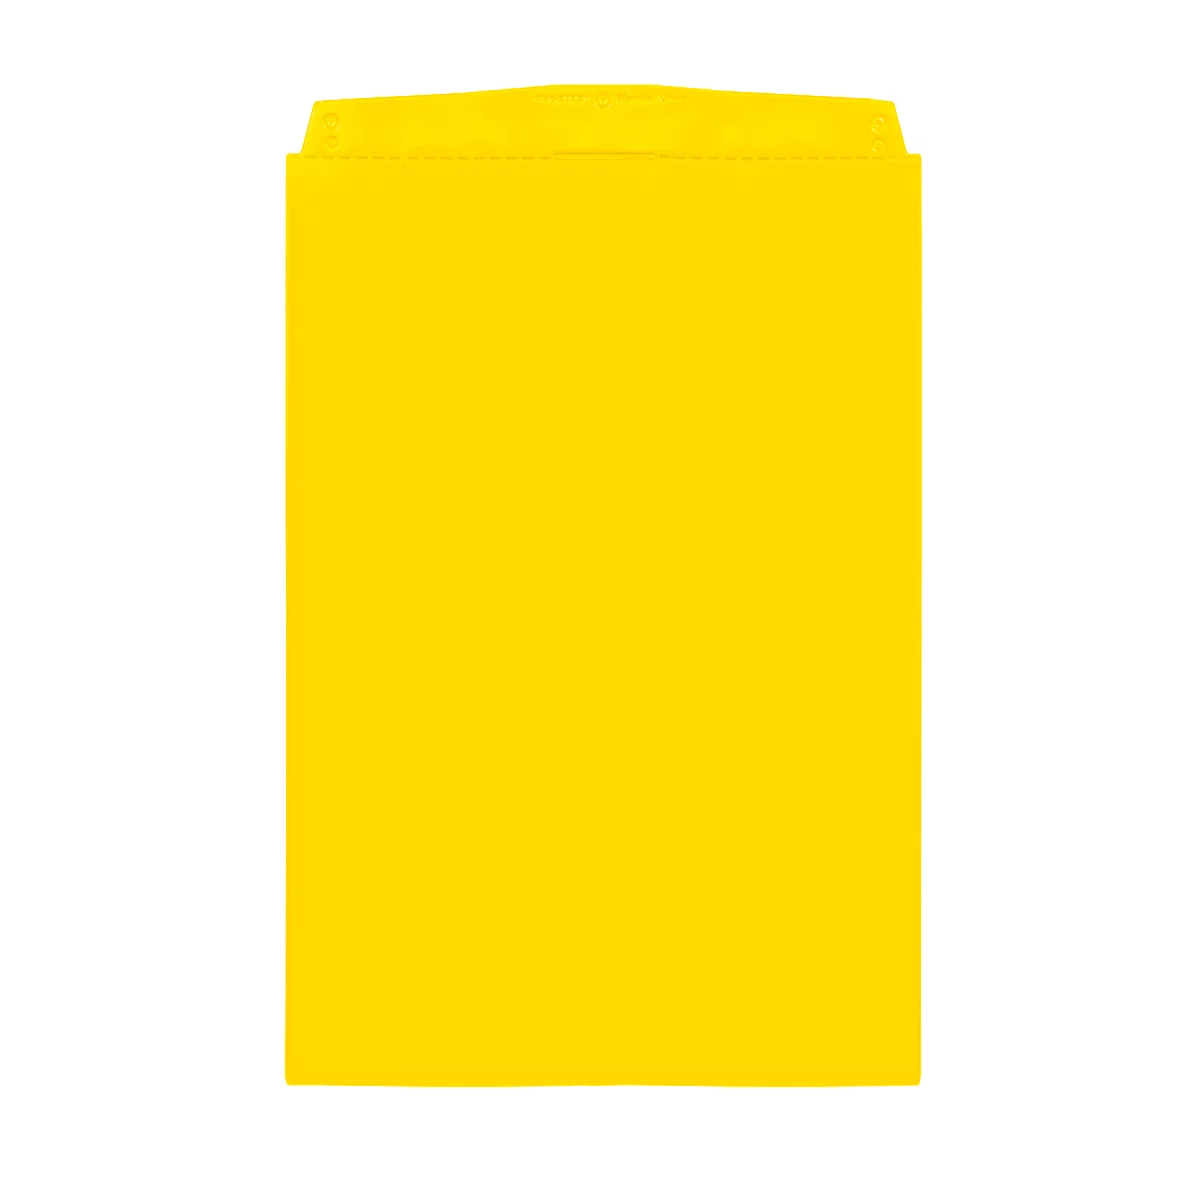 Fundas transparentes Orgatex, A5 alto, amarillo, 10 uds.